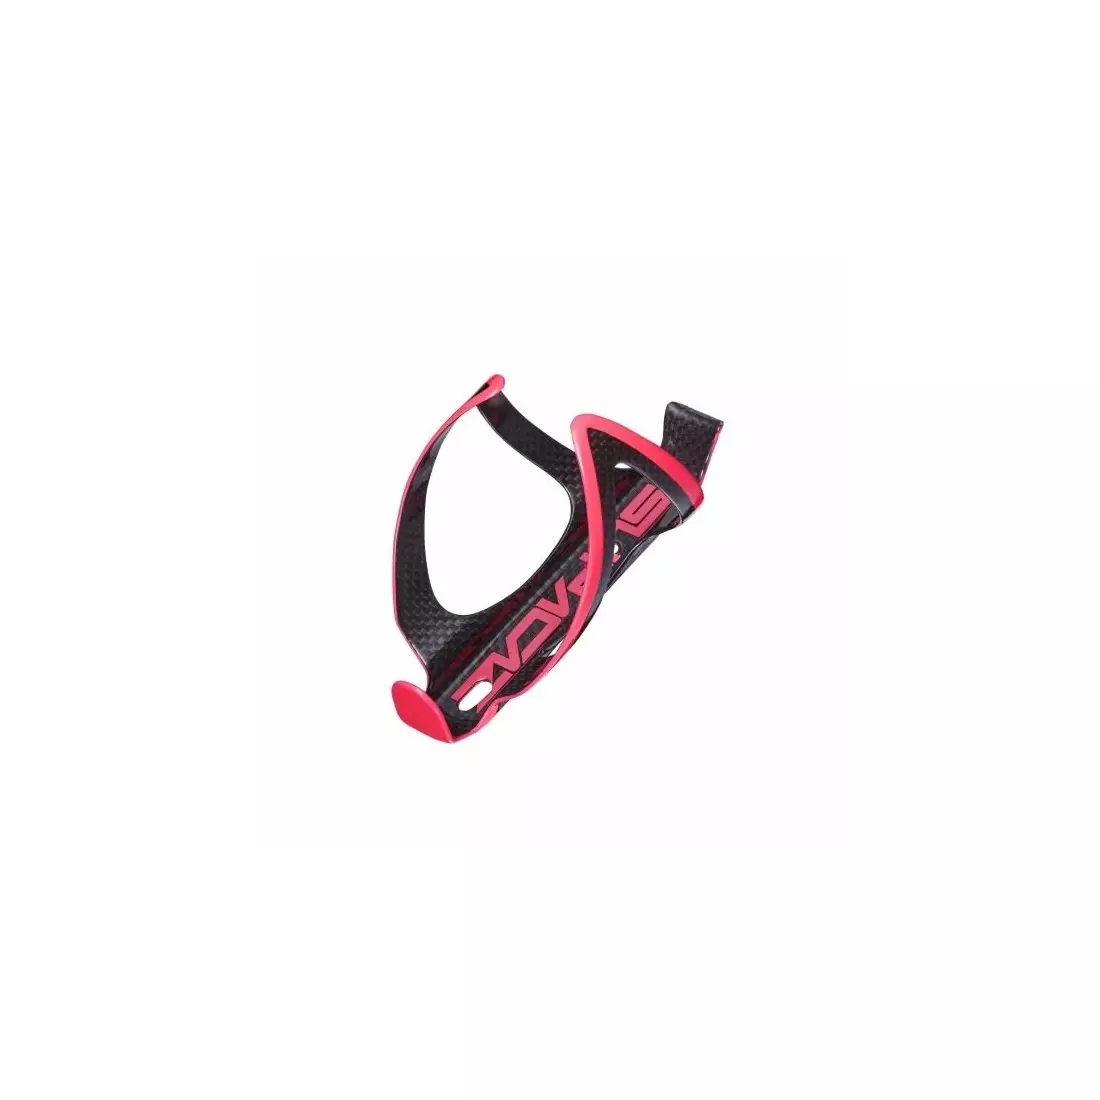 SUPACAZ kerékpár vizespalack ketrec FLY CARBON black/pink CG-06